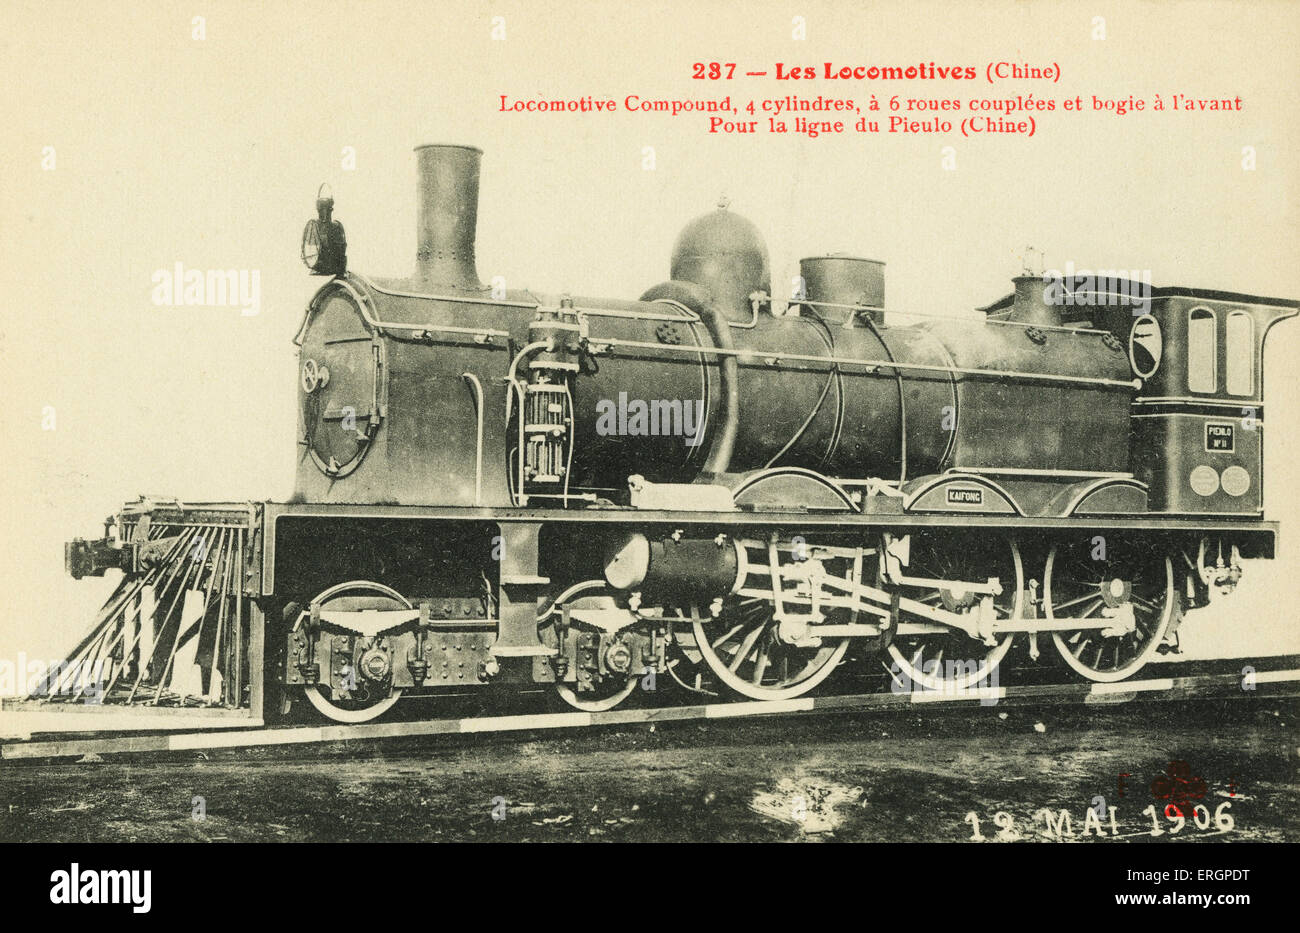 Chinesische Dampfzug, Pieulo Eisenbahnlinie, 12. Mai 1906. Lok Compound mit 4 Zylinder und 6 Fahrwerk Räder. Stockfoto